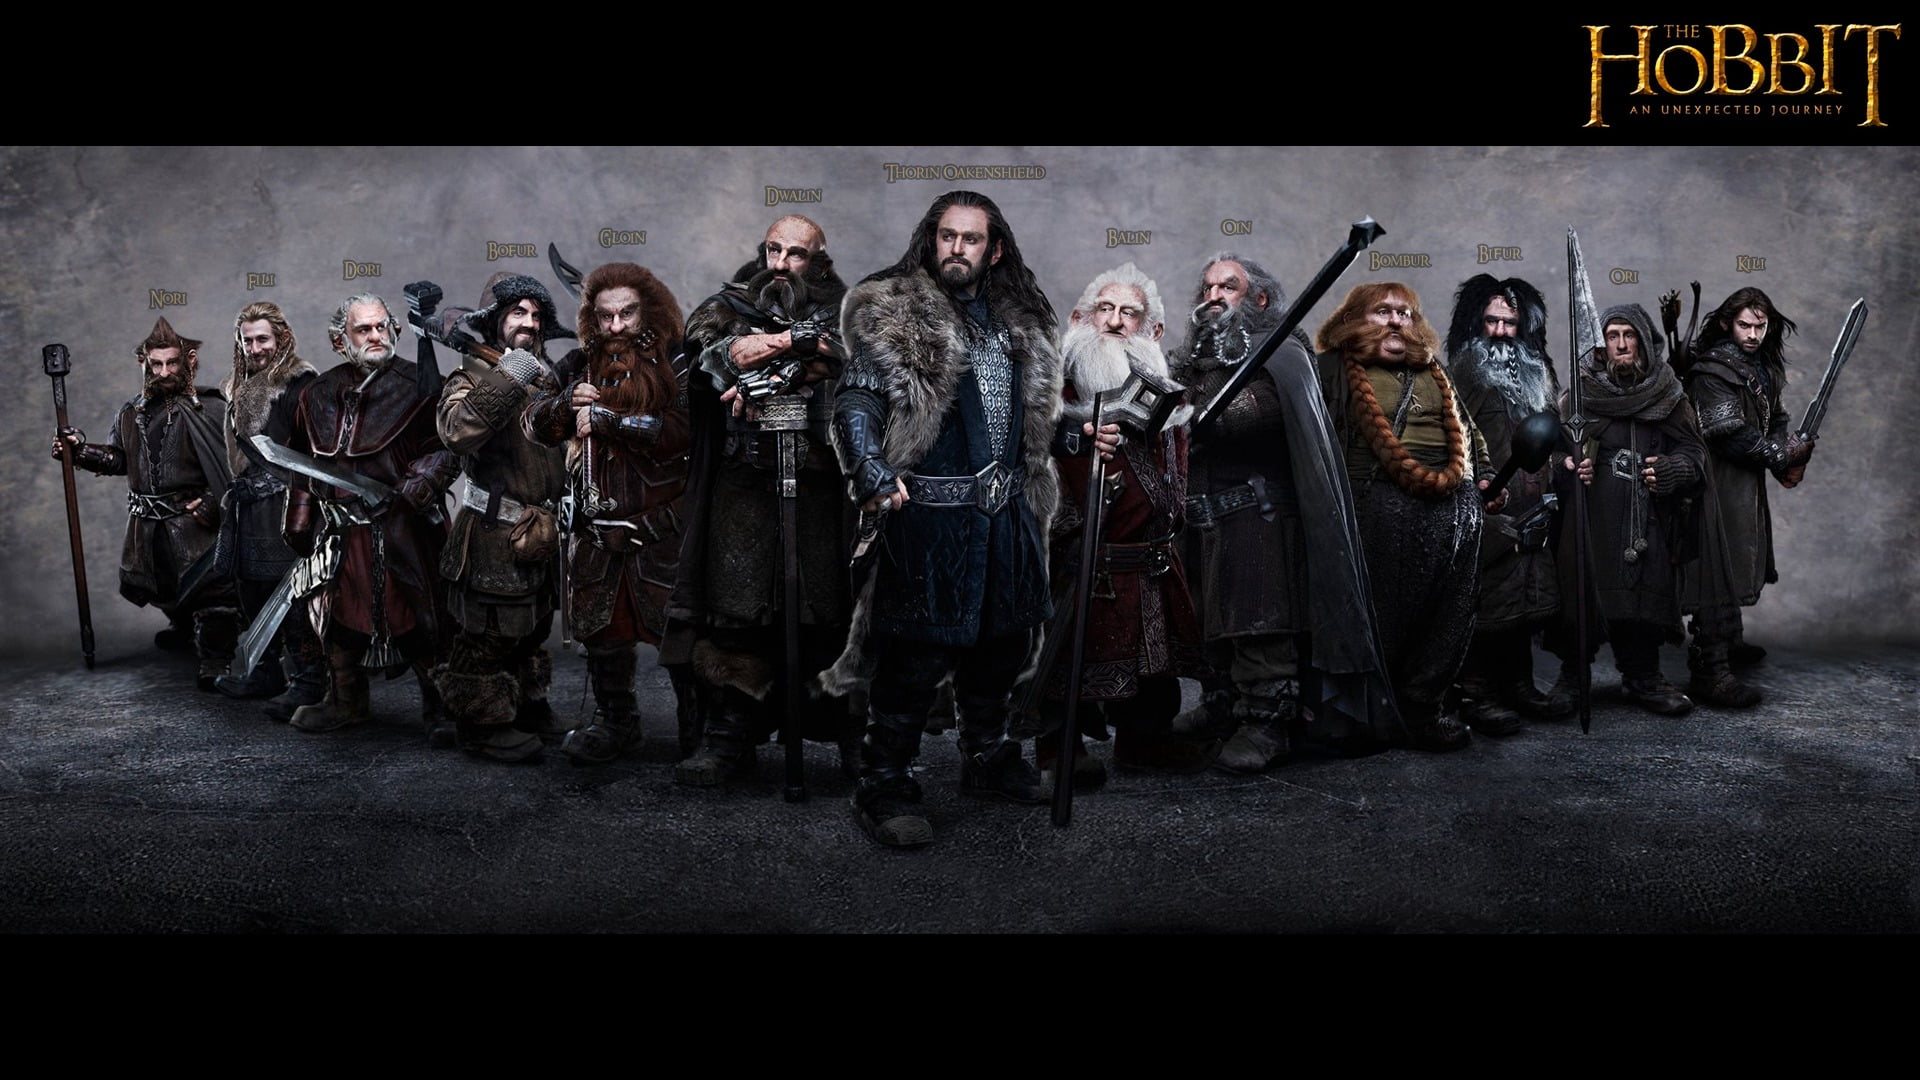 The Hobbit dwarfs HD wallpaper, The Hobbit: An Unexpected Journey